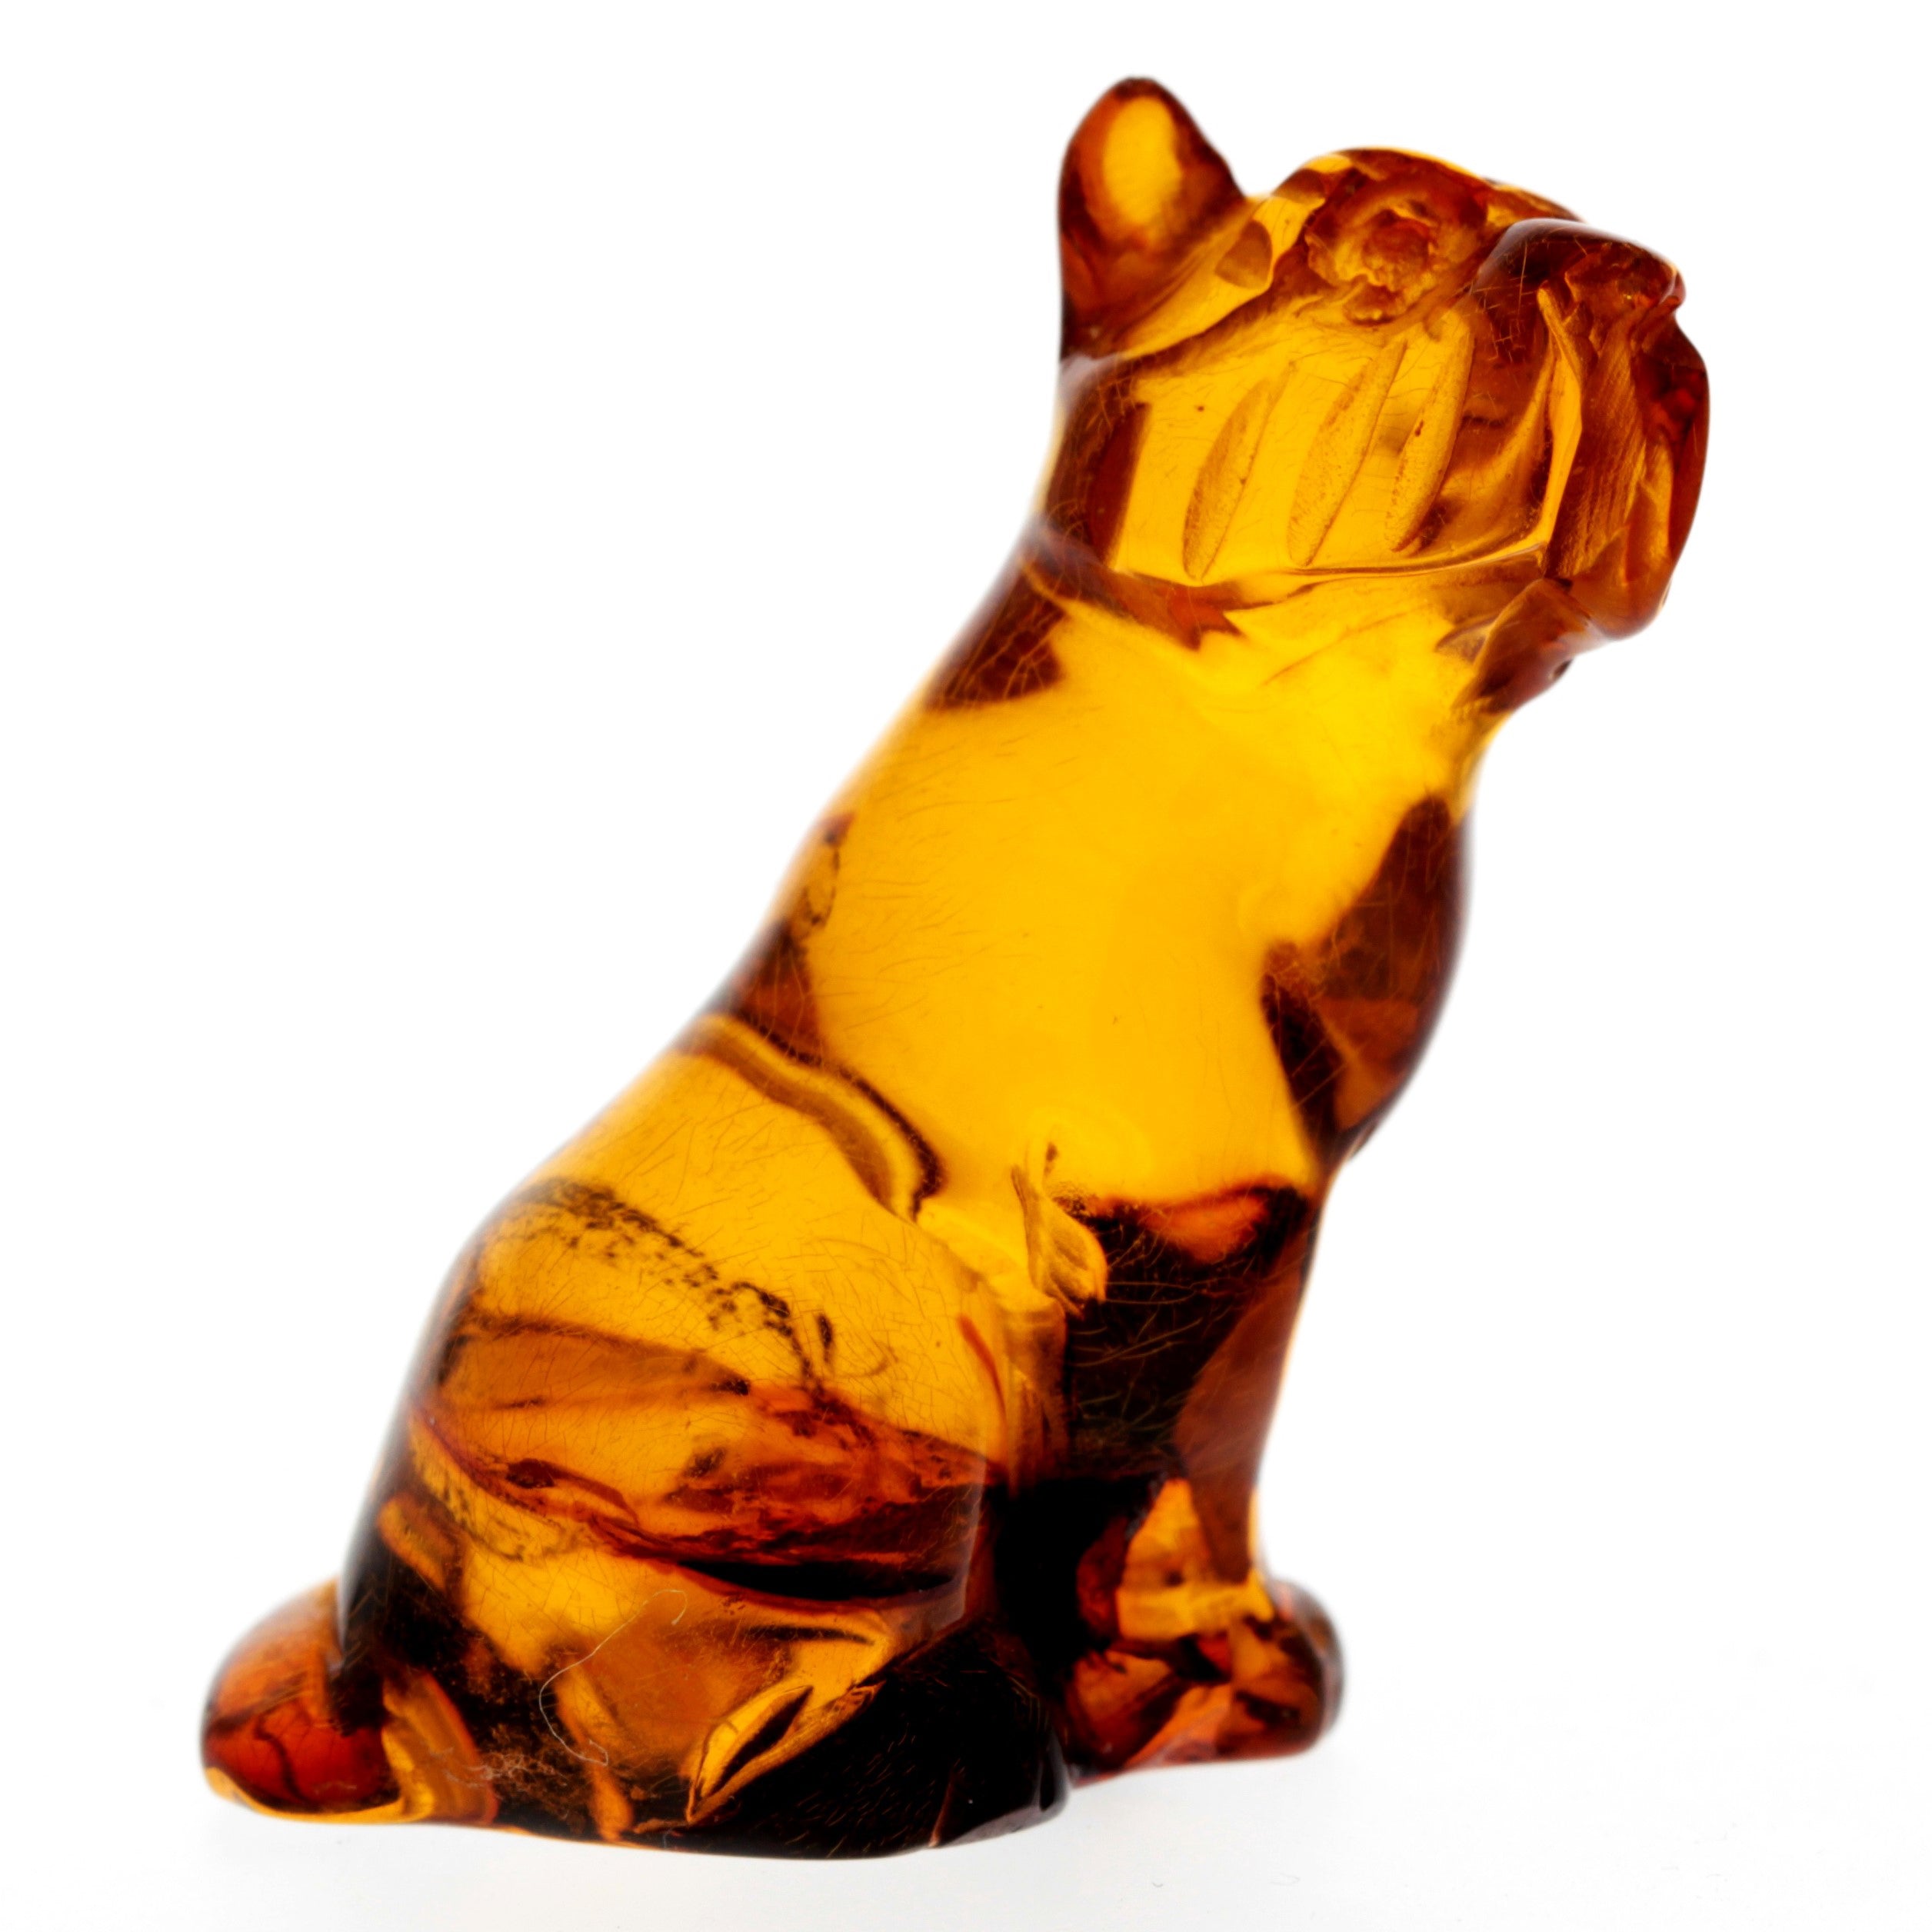 Figurine Superb Quality Handmade Natural Carved Dog made of Genuine Baltic Amber - CRV85